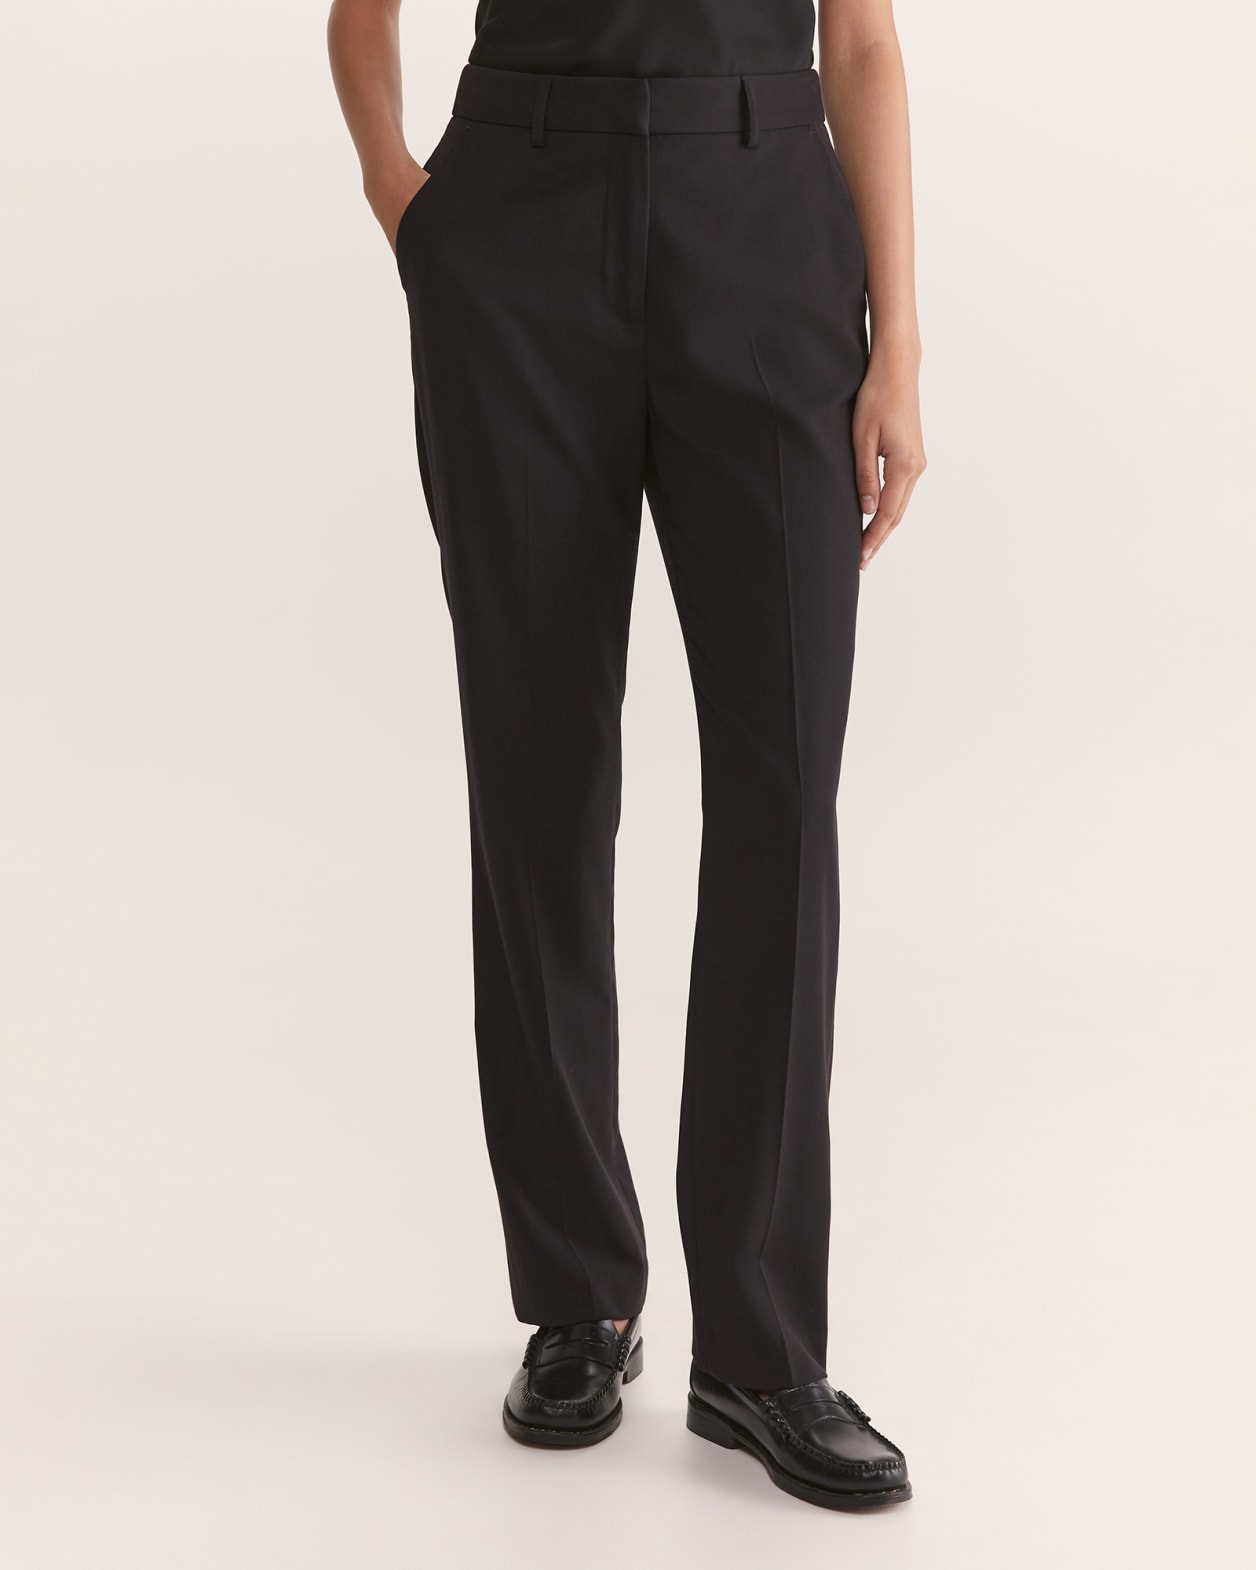 Celeste Wool Straight Suit Pant in BLACK